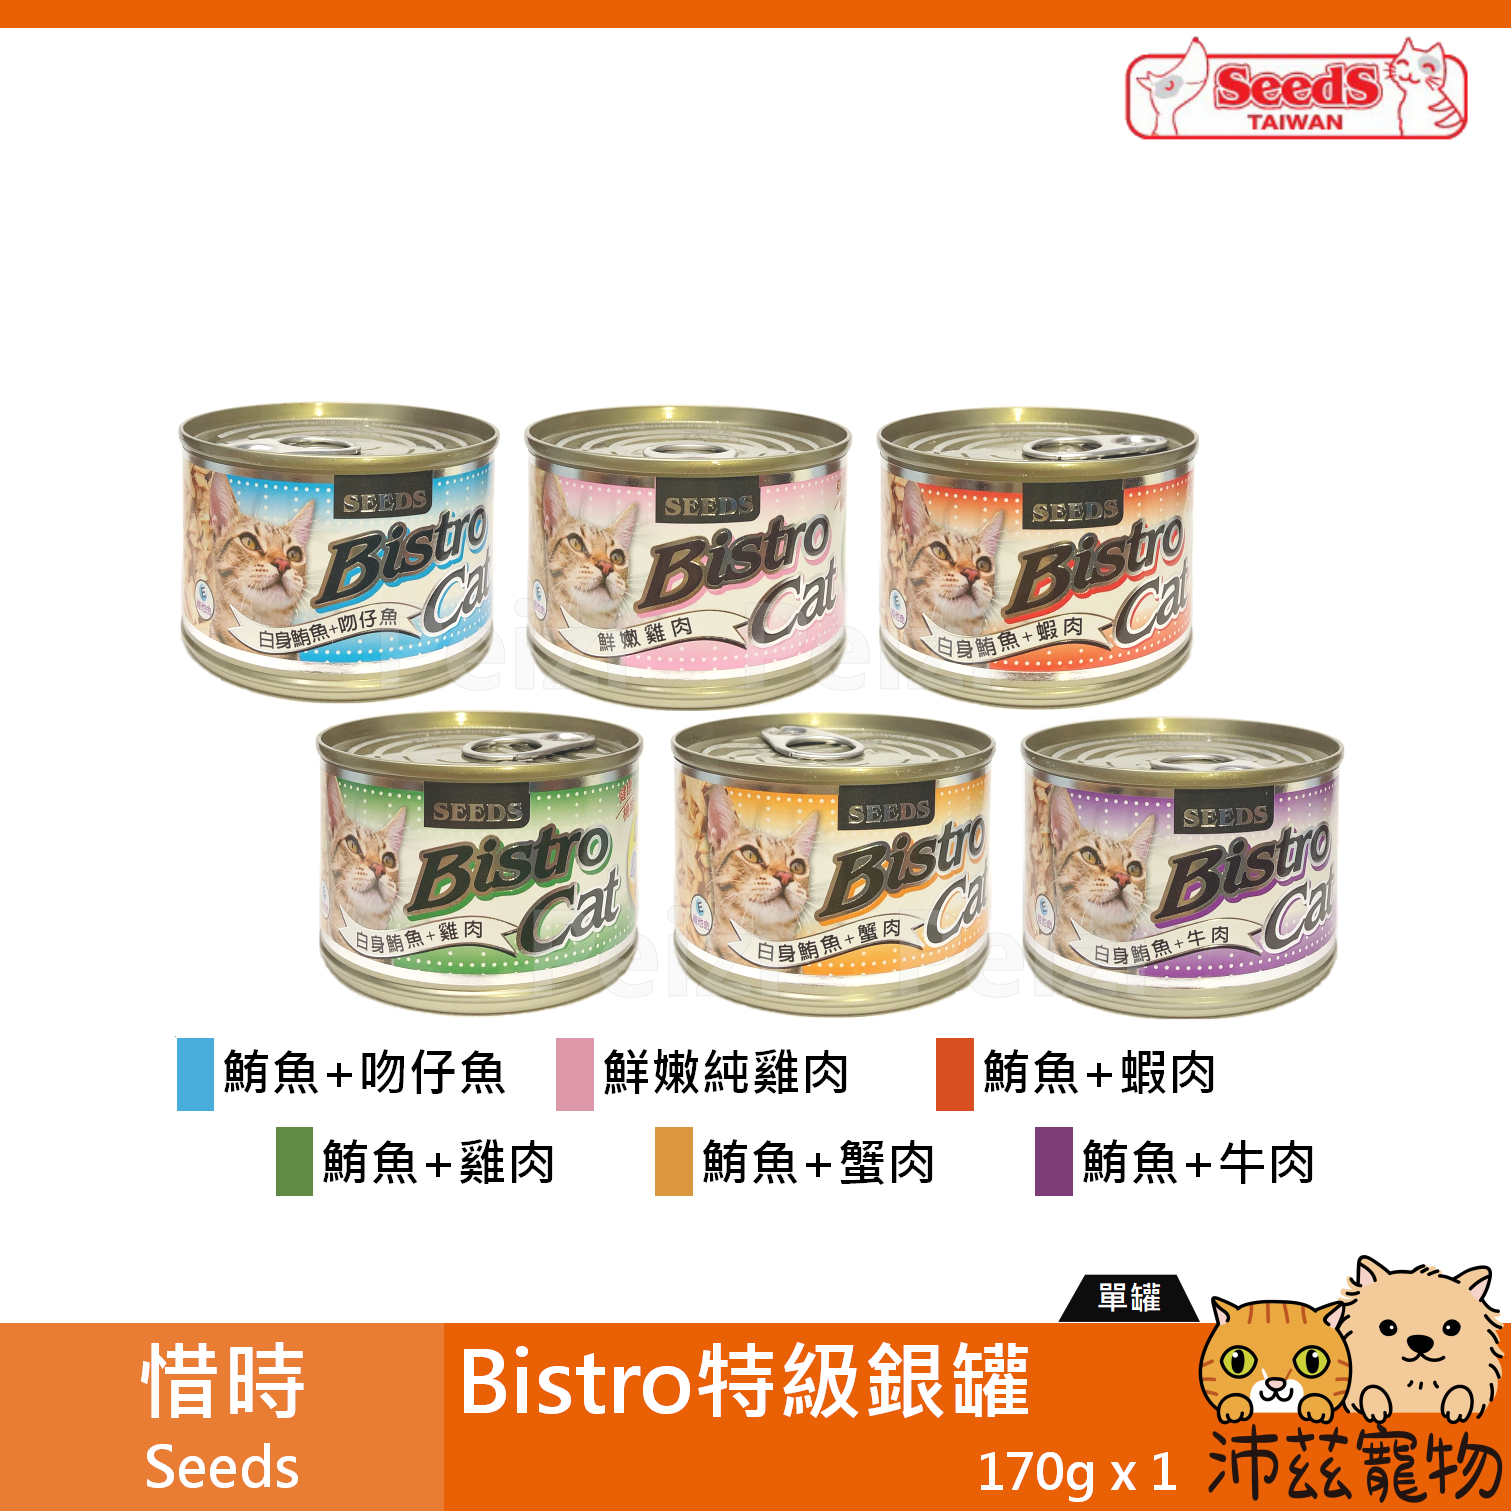 【惜時 Seeds 特級銀罐 170g】Bistro 大銀罐 泰國 副食罐 貓罐 貓 罐